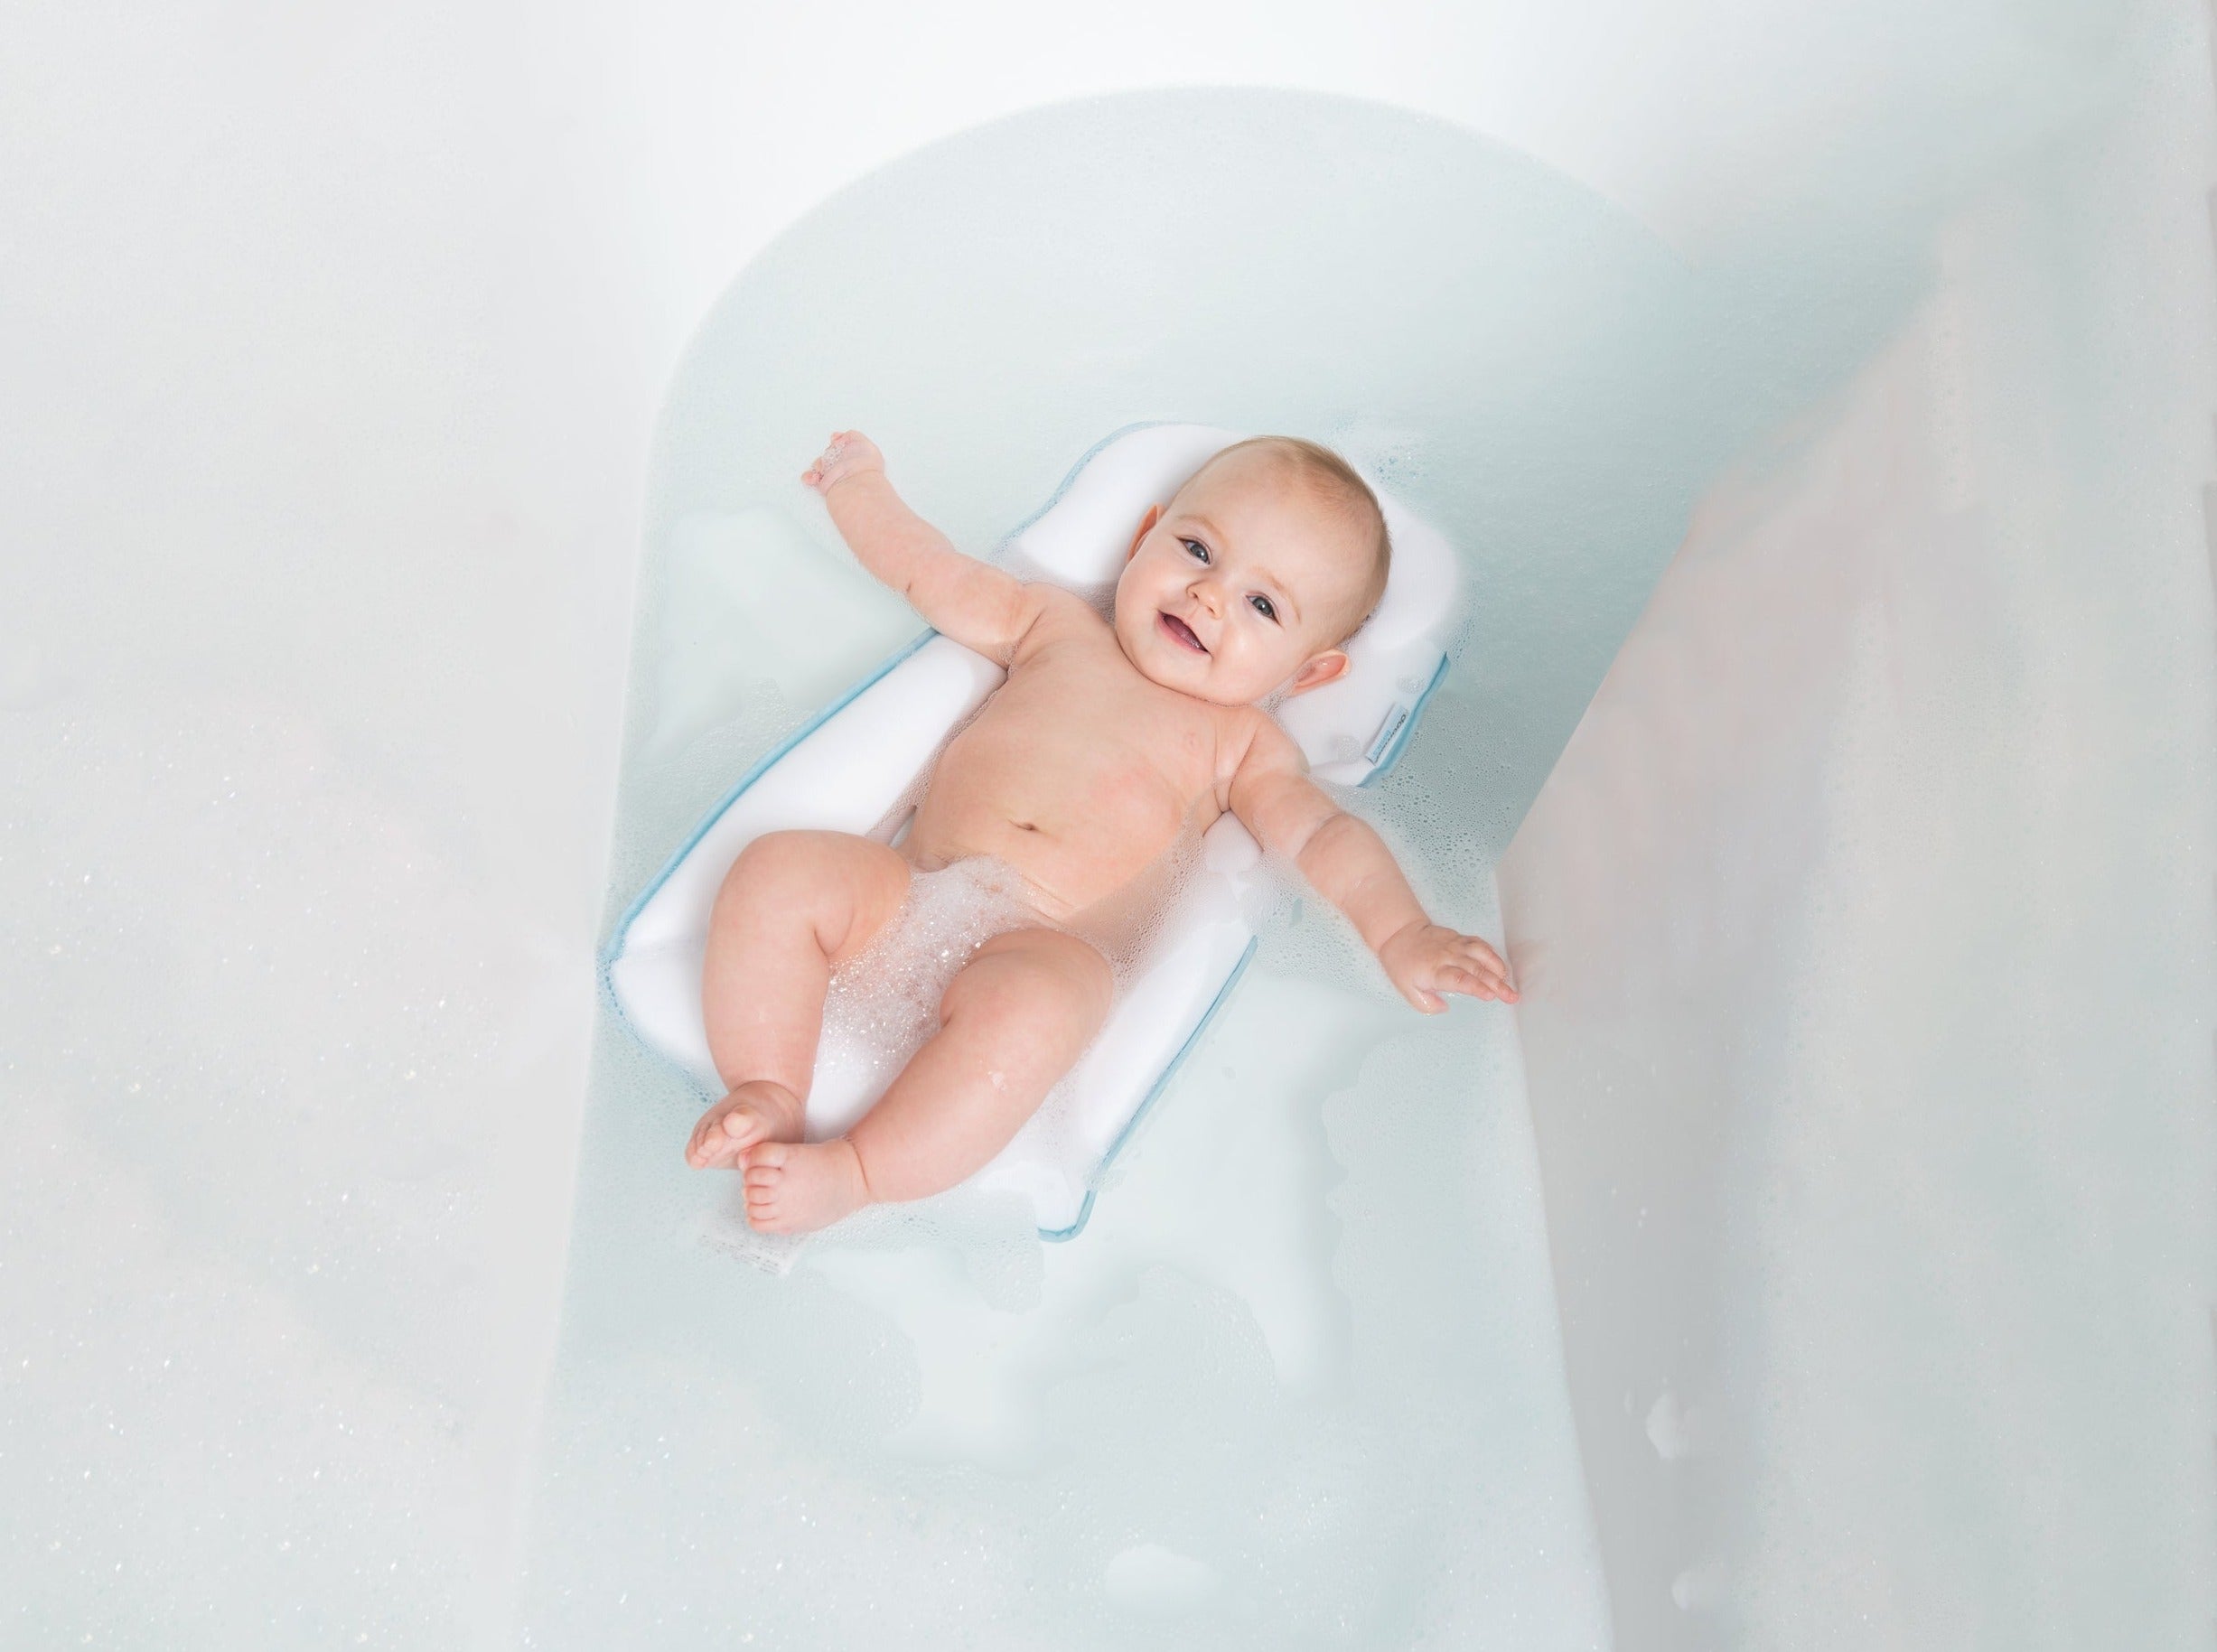 baby in bath tub on easy bath cushion